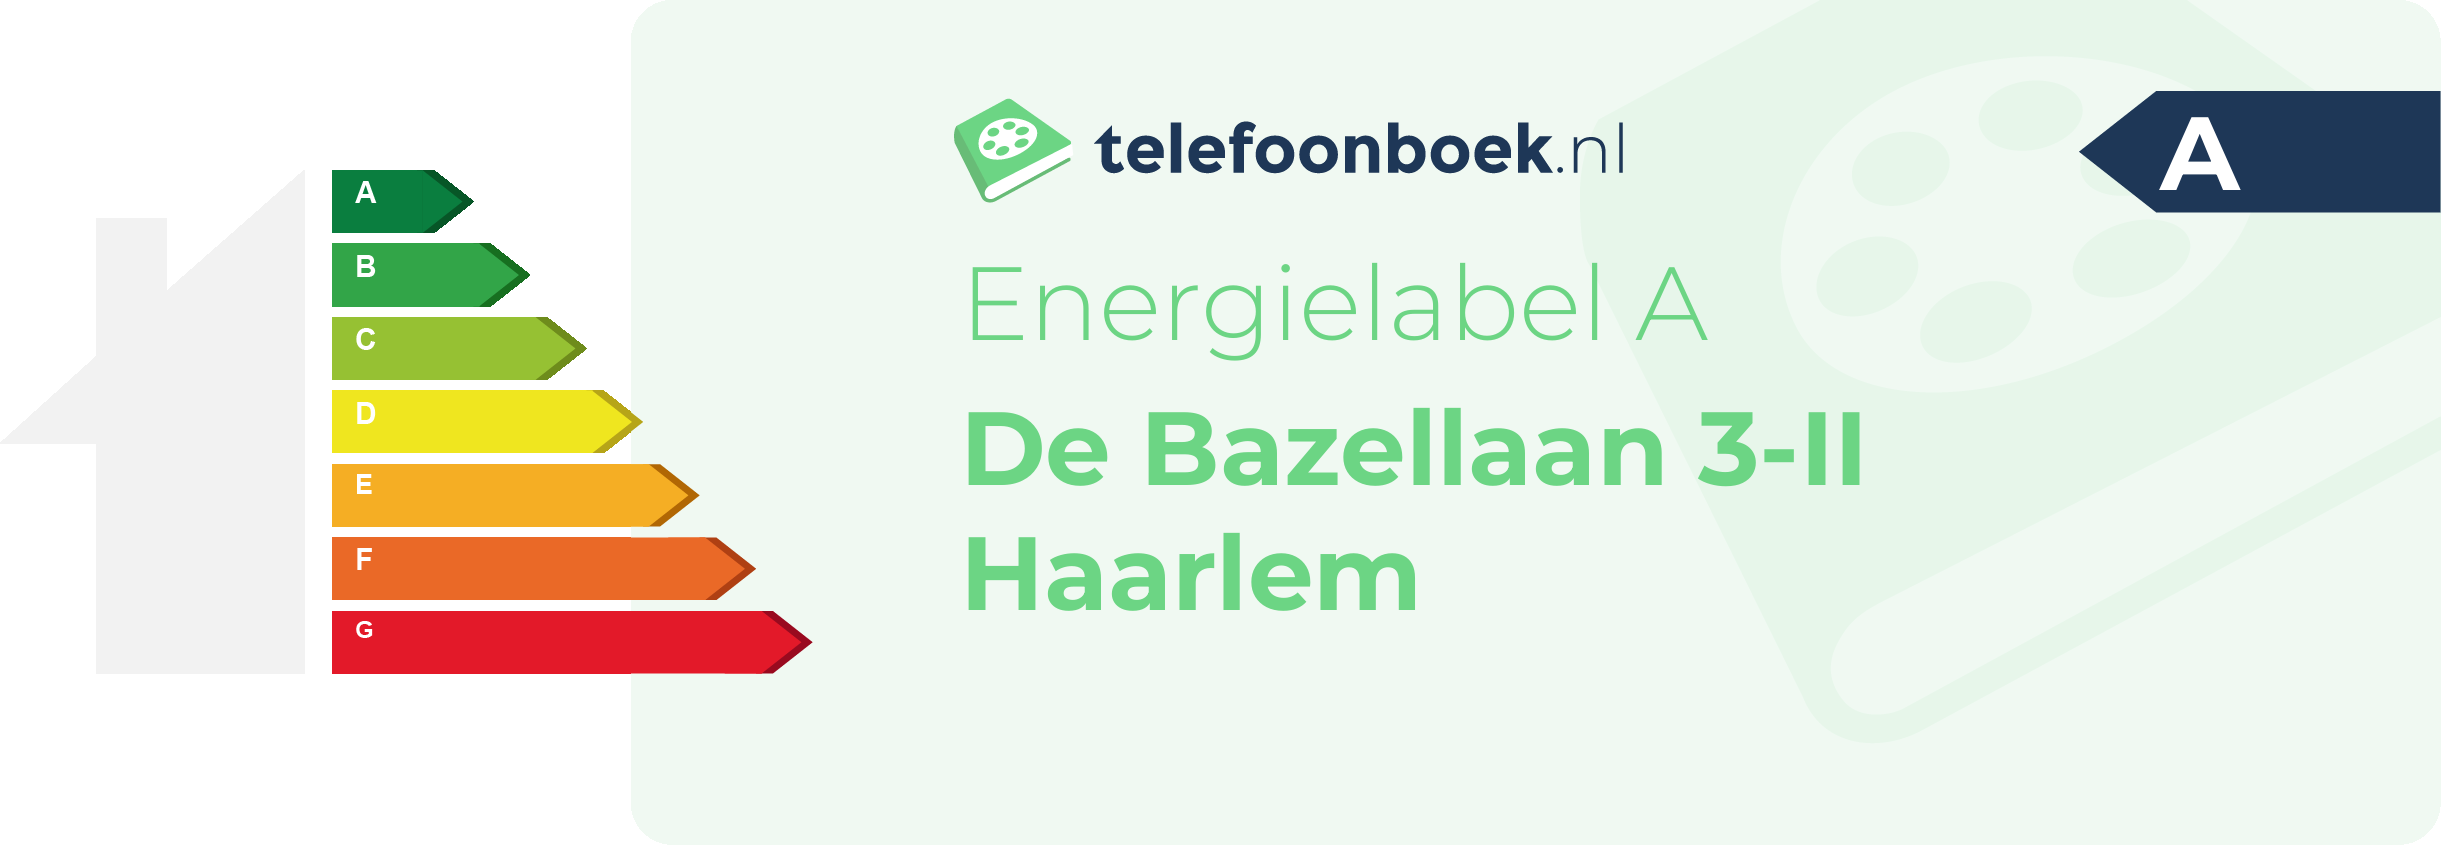 Energielabel De Bazellaan 3-II Haarlem